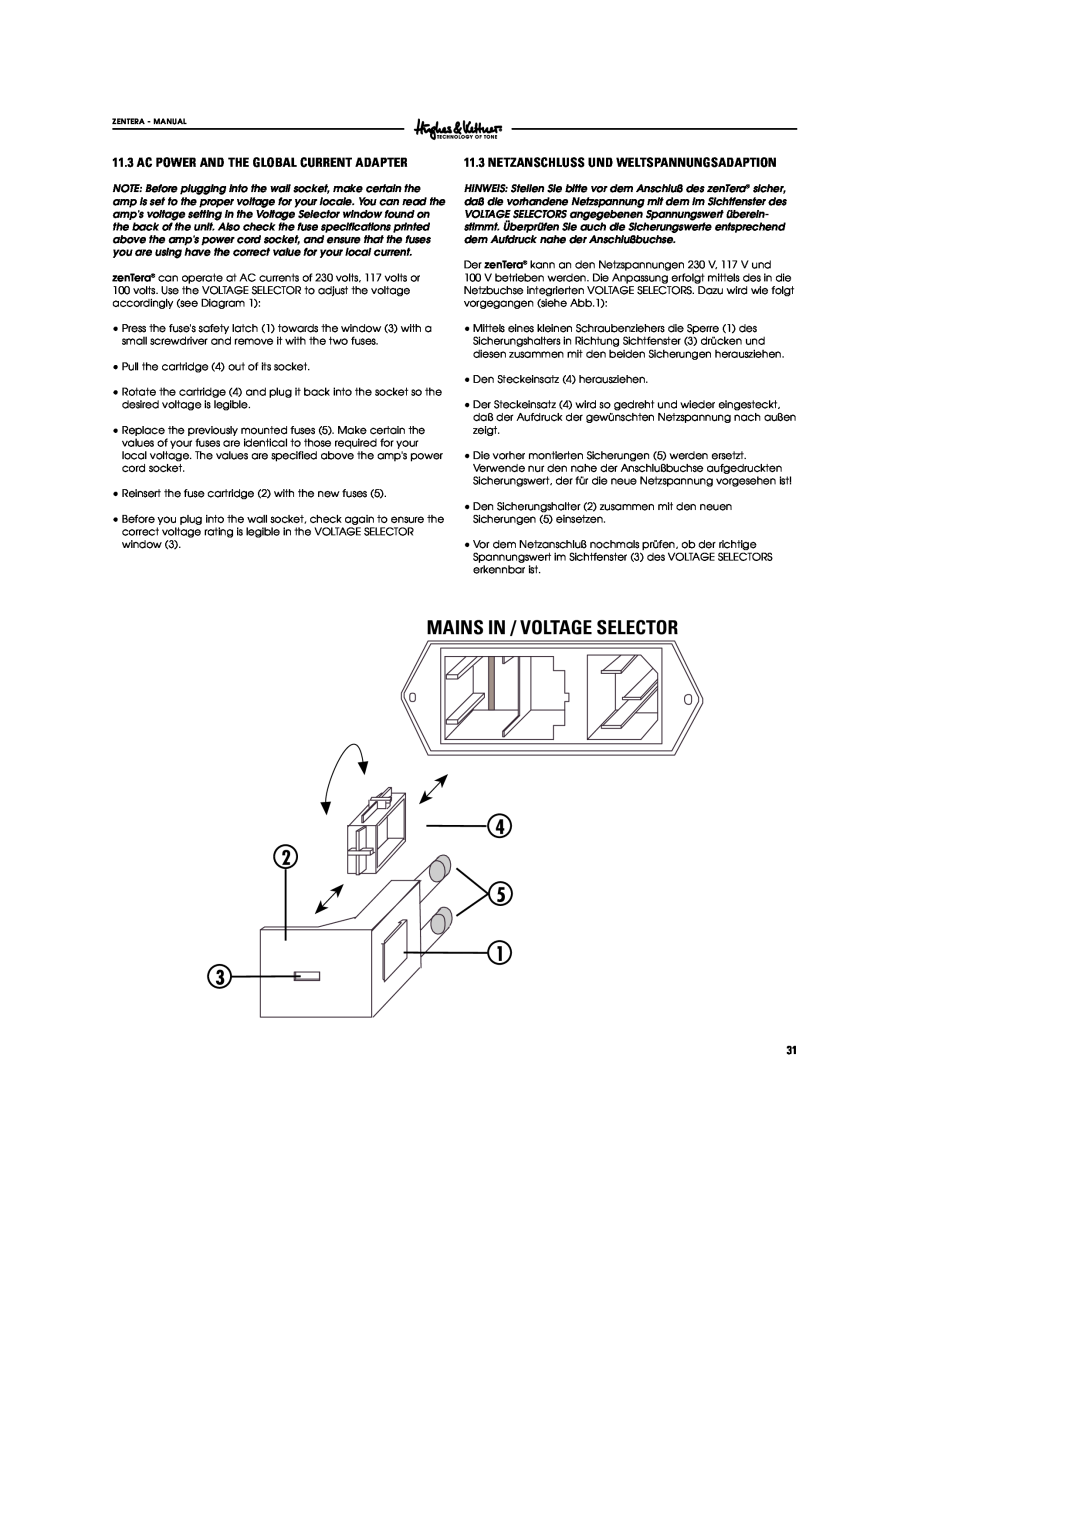 Hughes & Kettner DSM manual Ac Power And The Global Current Adapter, Netzanschluss Und Weltspannungsadaption 